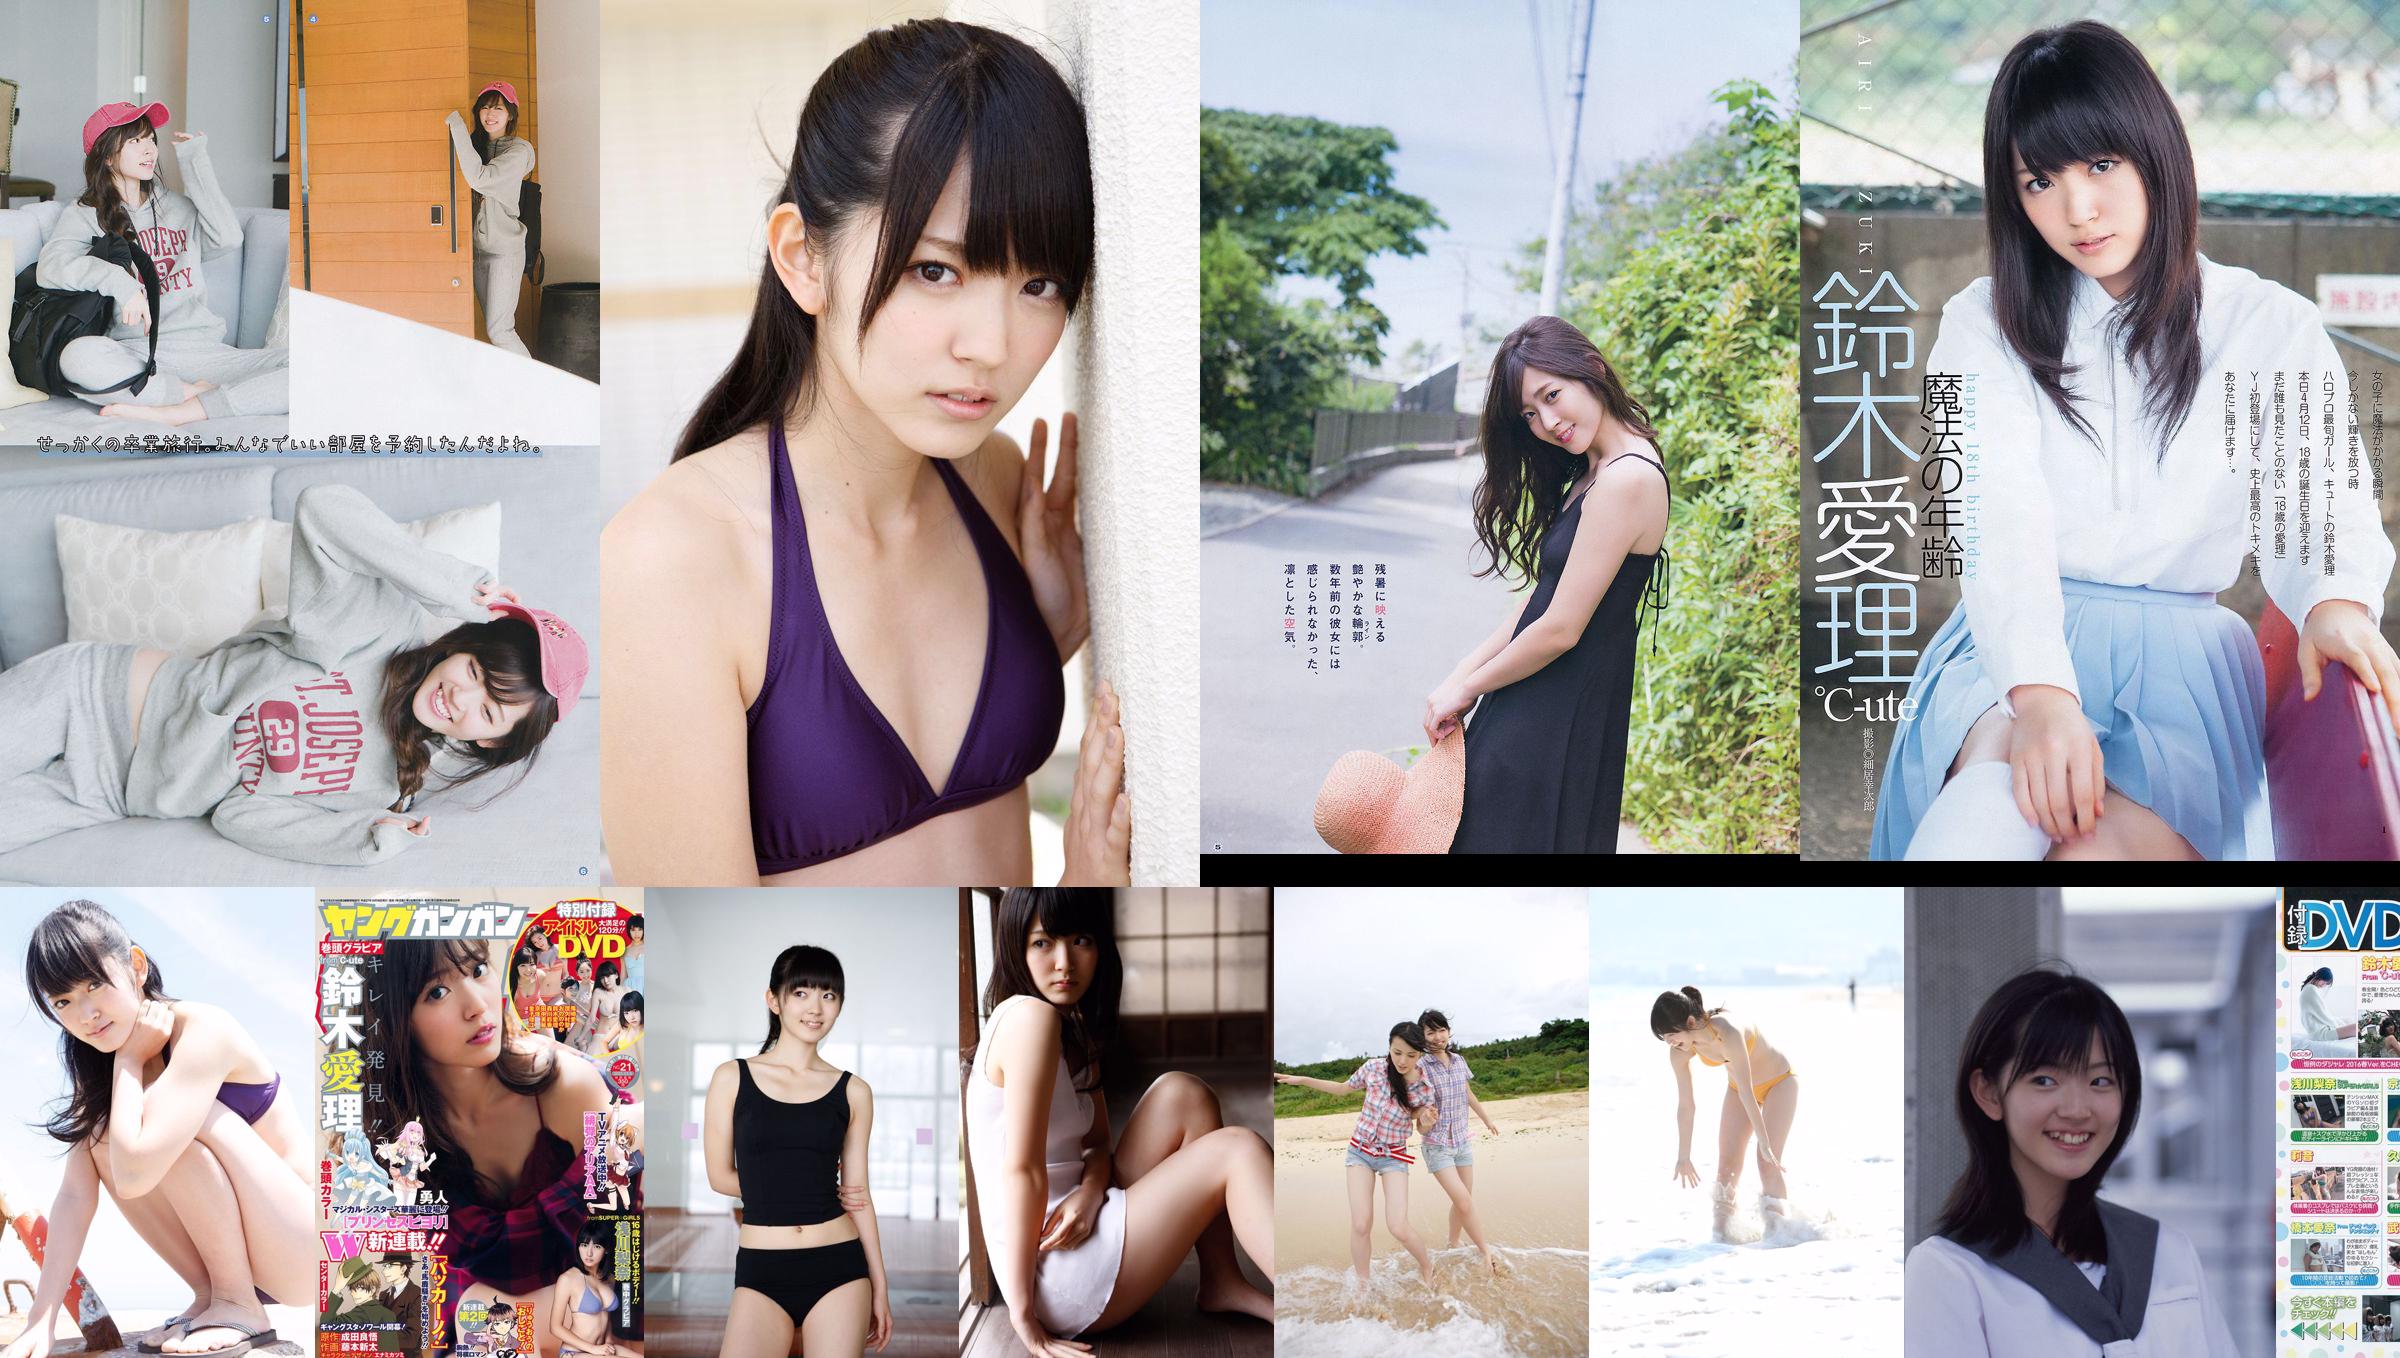 [Young Gangan] Suzuki Airi Asakawa Rina Fuji City Ann 2015 No.21 Photo Magazine No.855924 Pagina 4